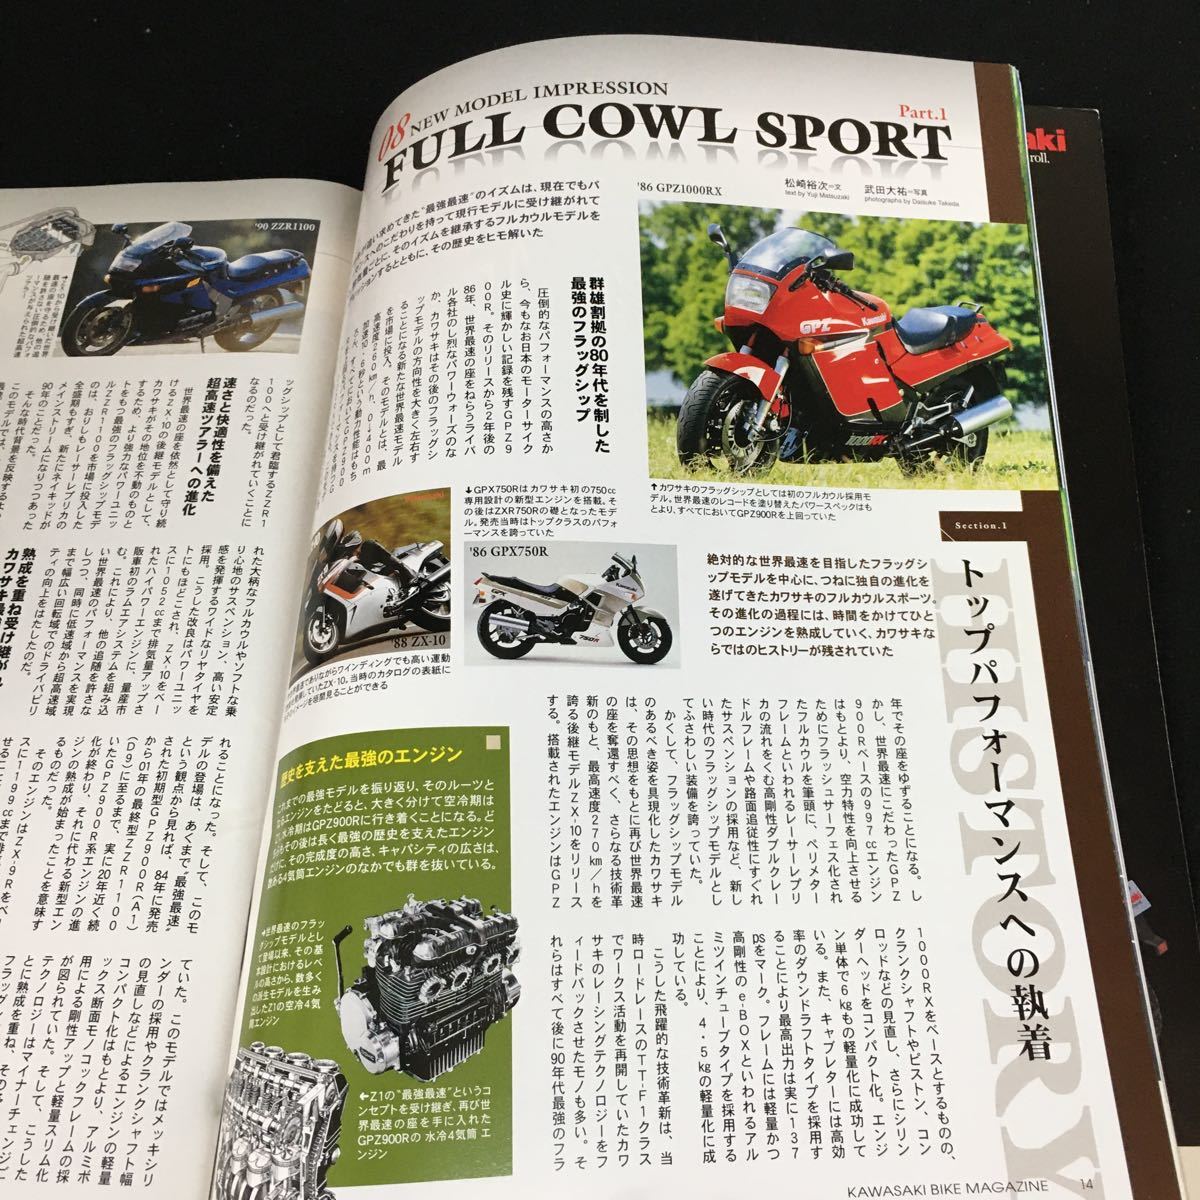 c-455 Kawasaki カワサキバイクマガジン7月号 vol.72 株式会社ぶんか社 平成20年発行※12_画像4